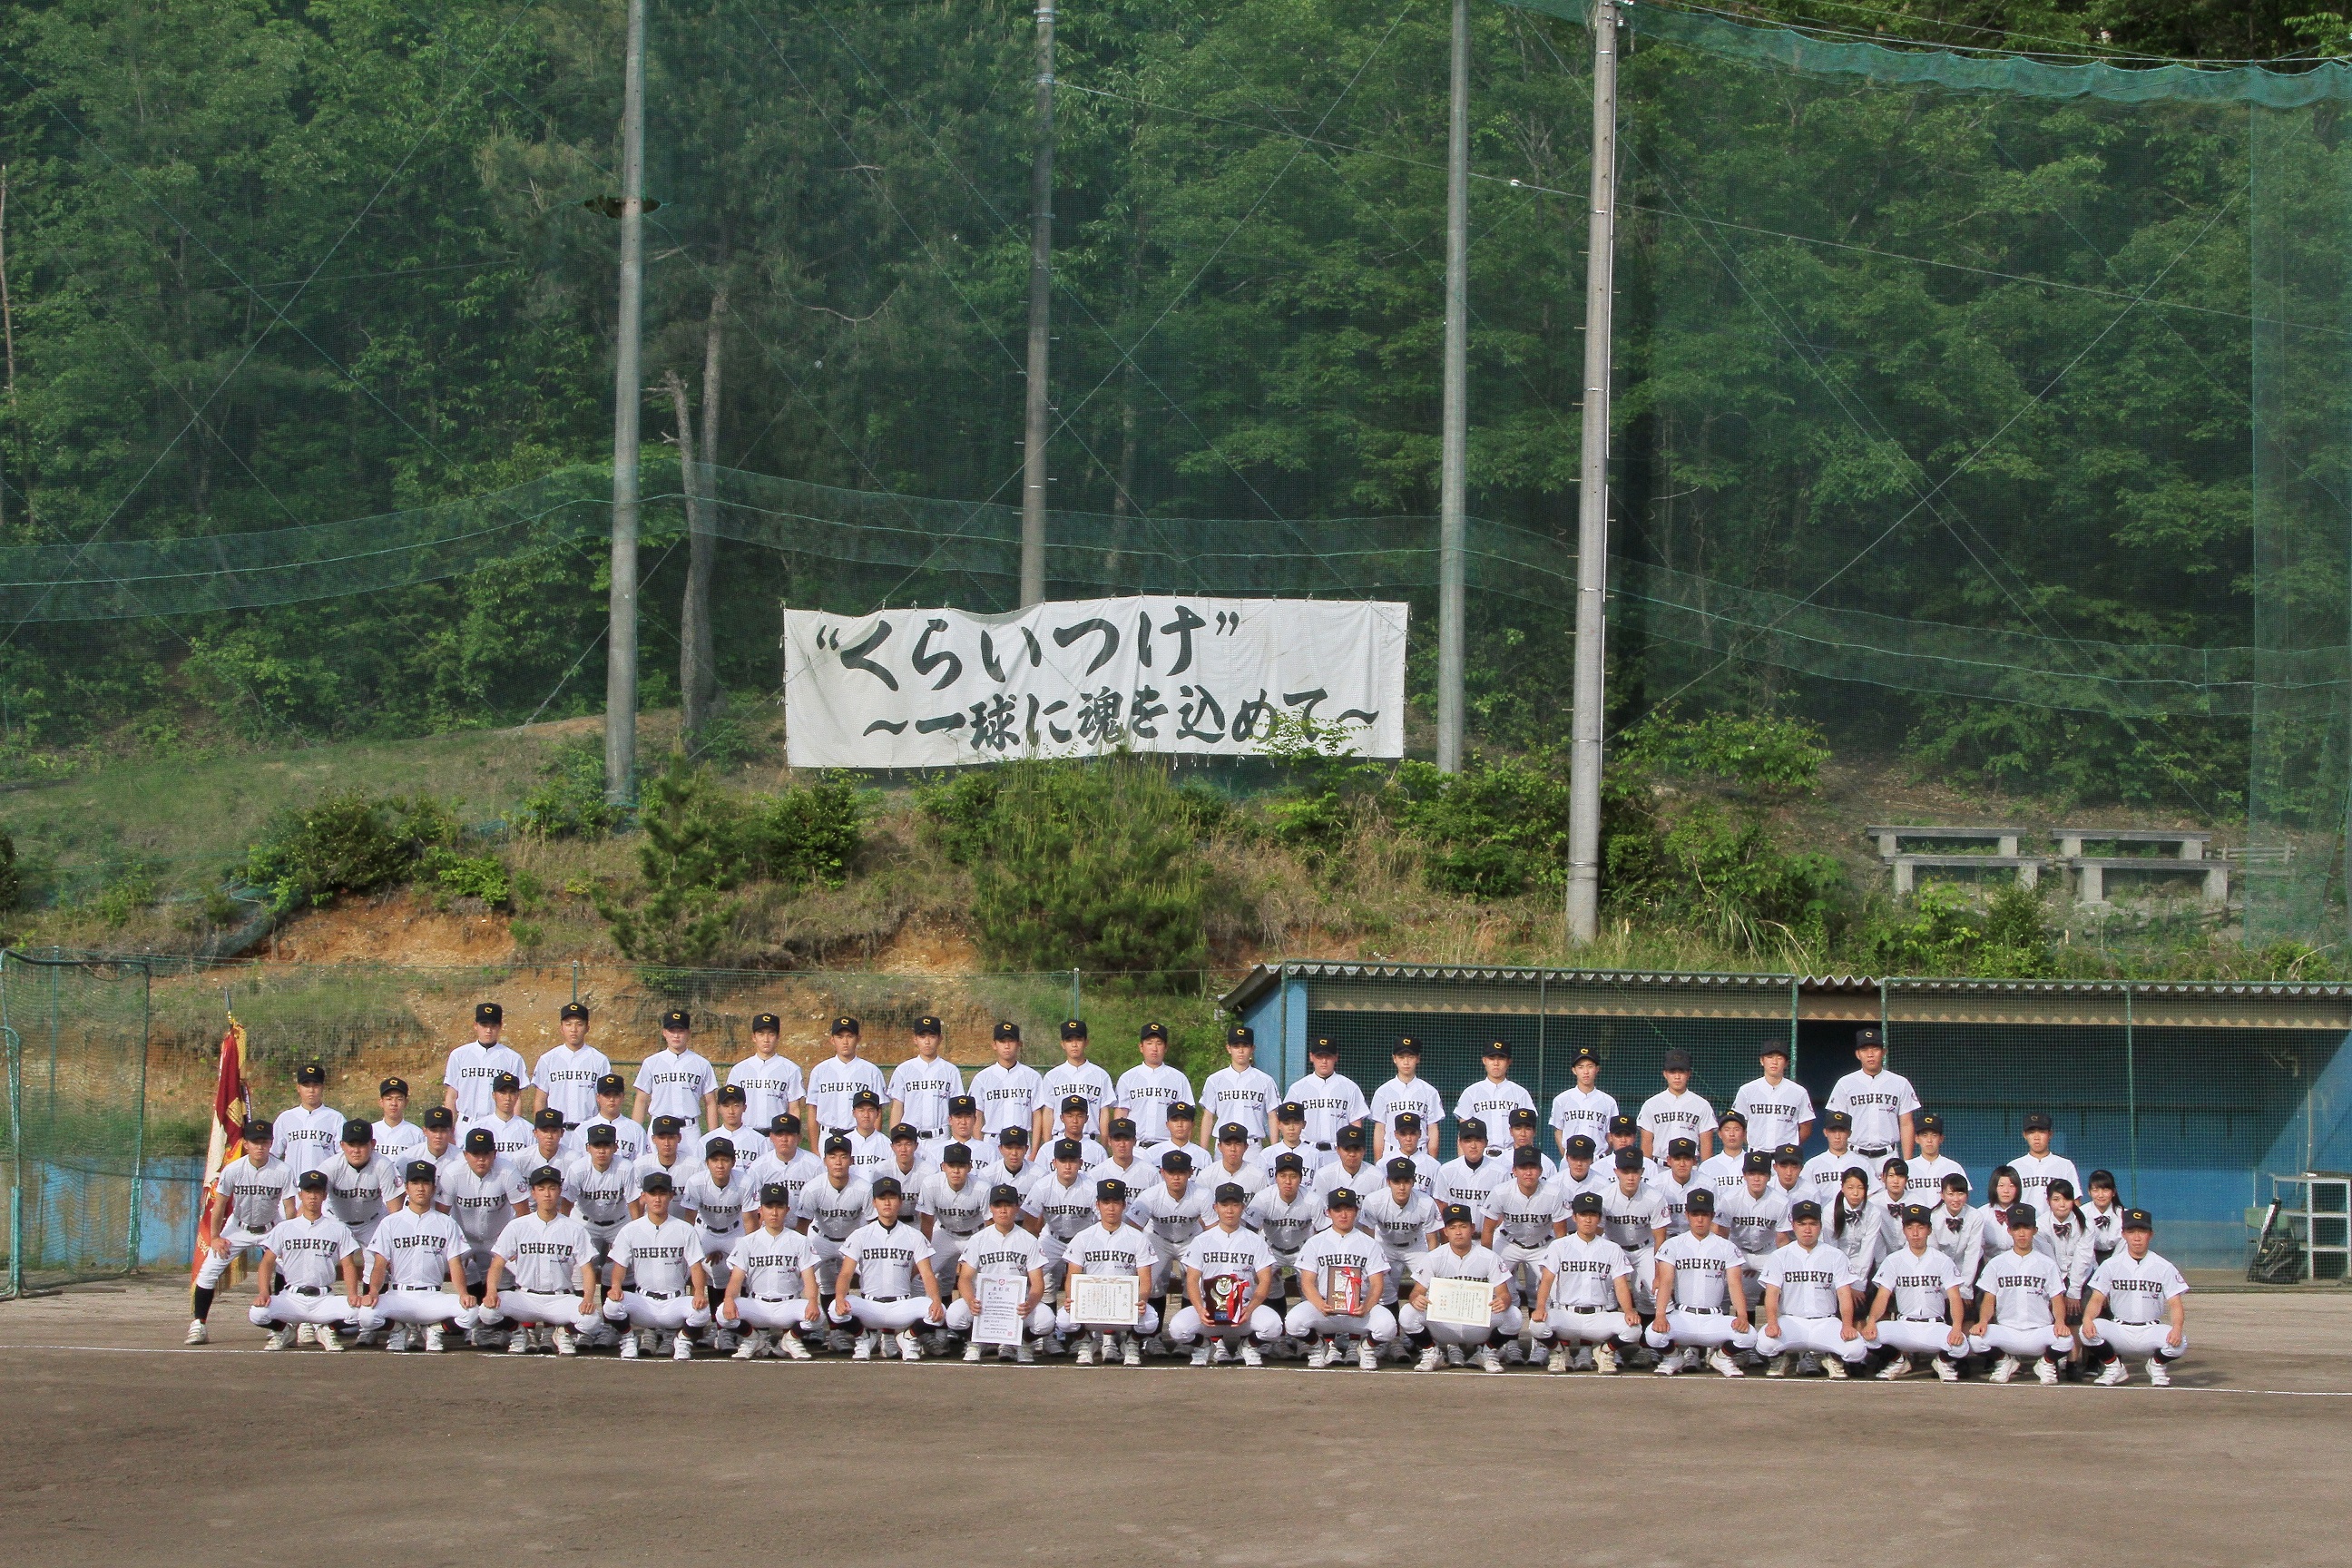 中京学院大中京高校野球部の寮やグランドは 部員数や練習も調査 エンタメガ天